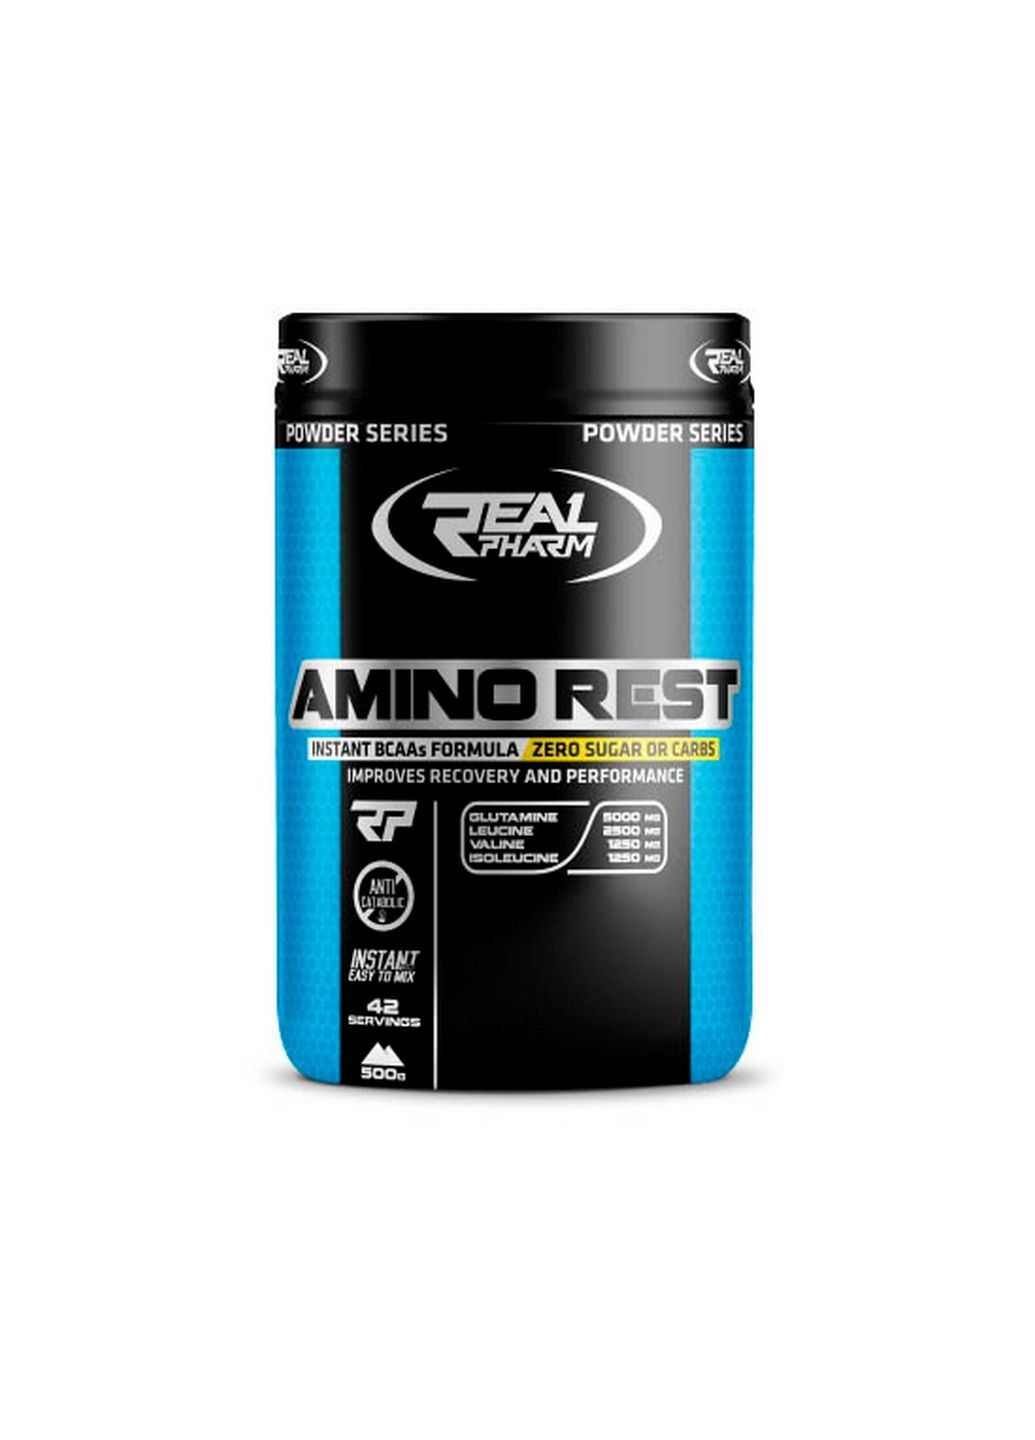 Аминокислота Amino Rest, 500 грамм Манго-маракуйя Real Pharm (293420194)